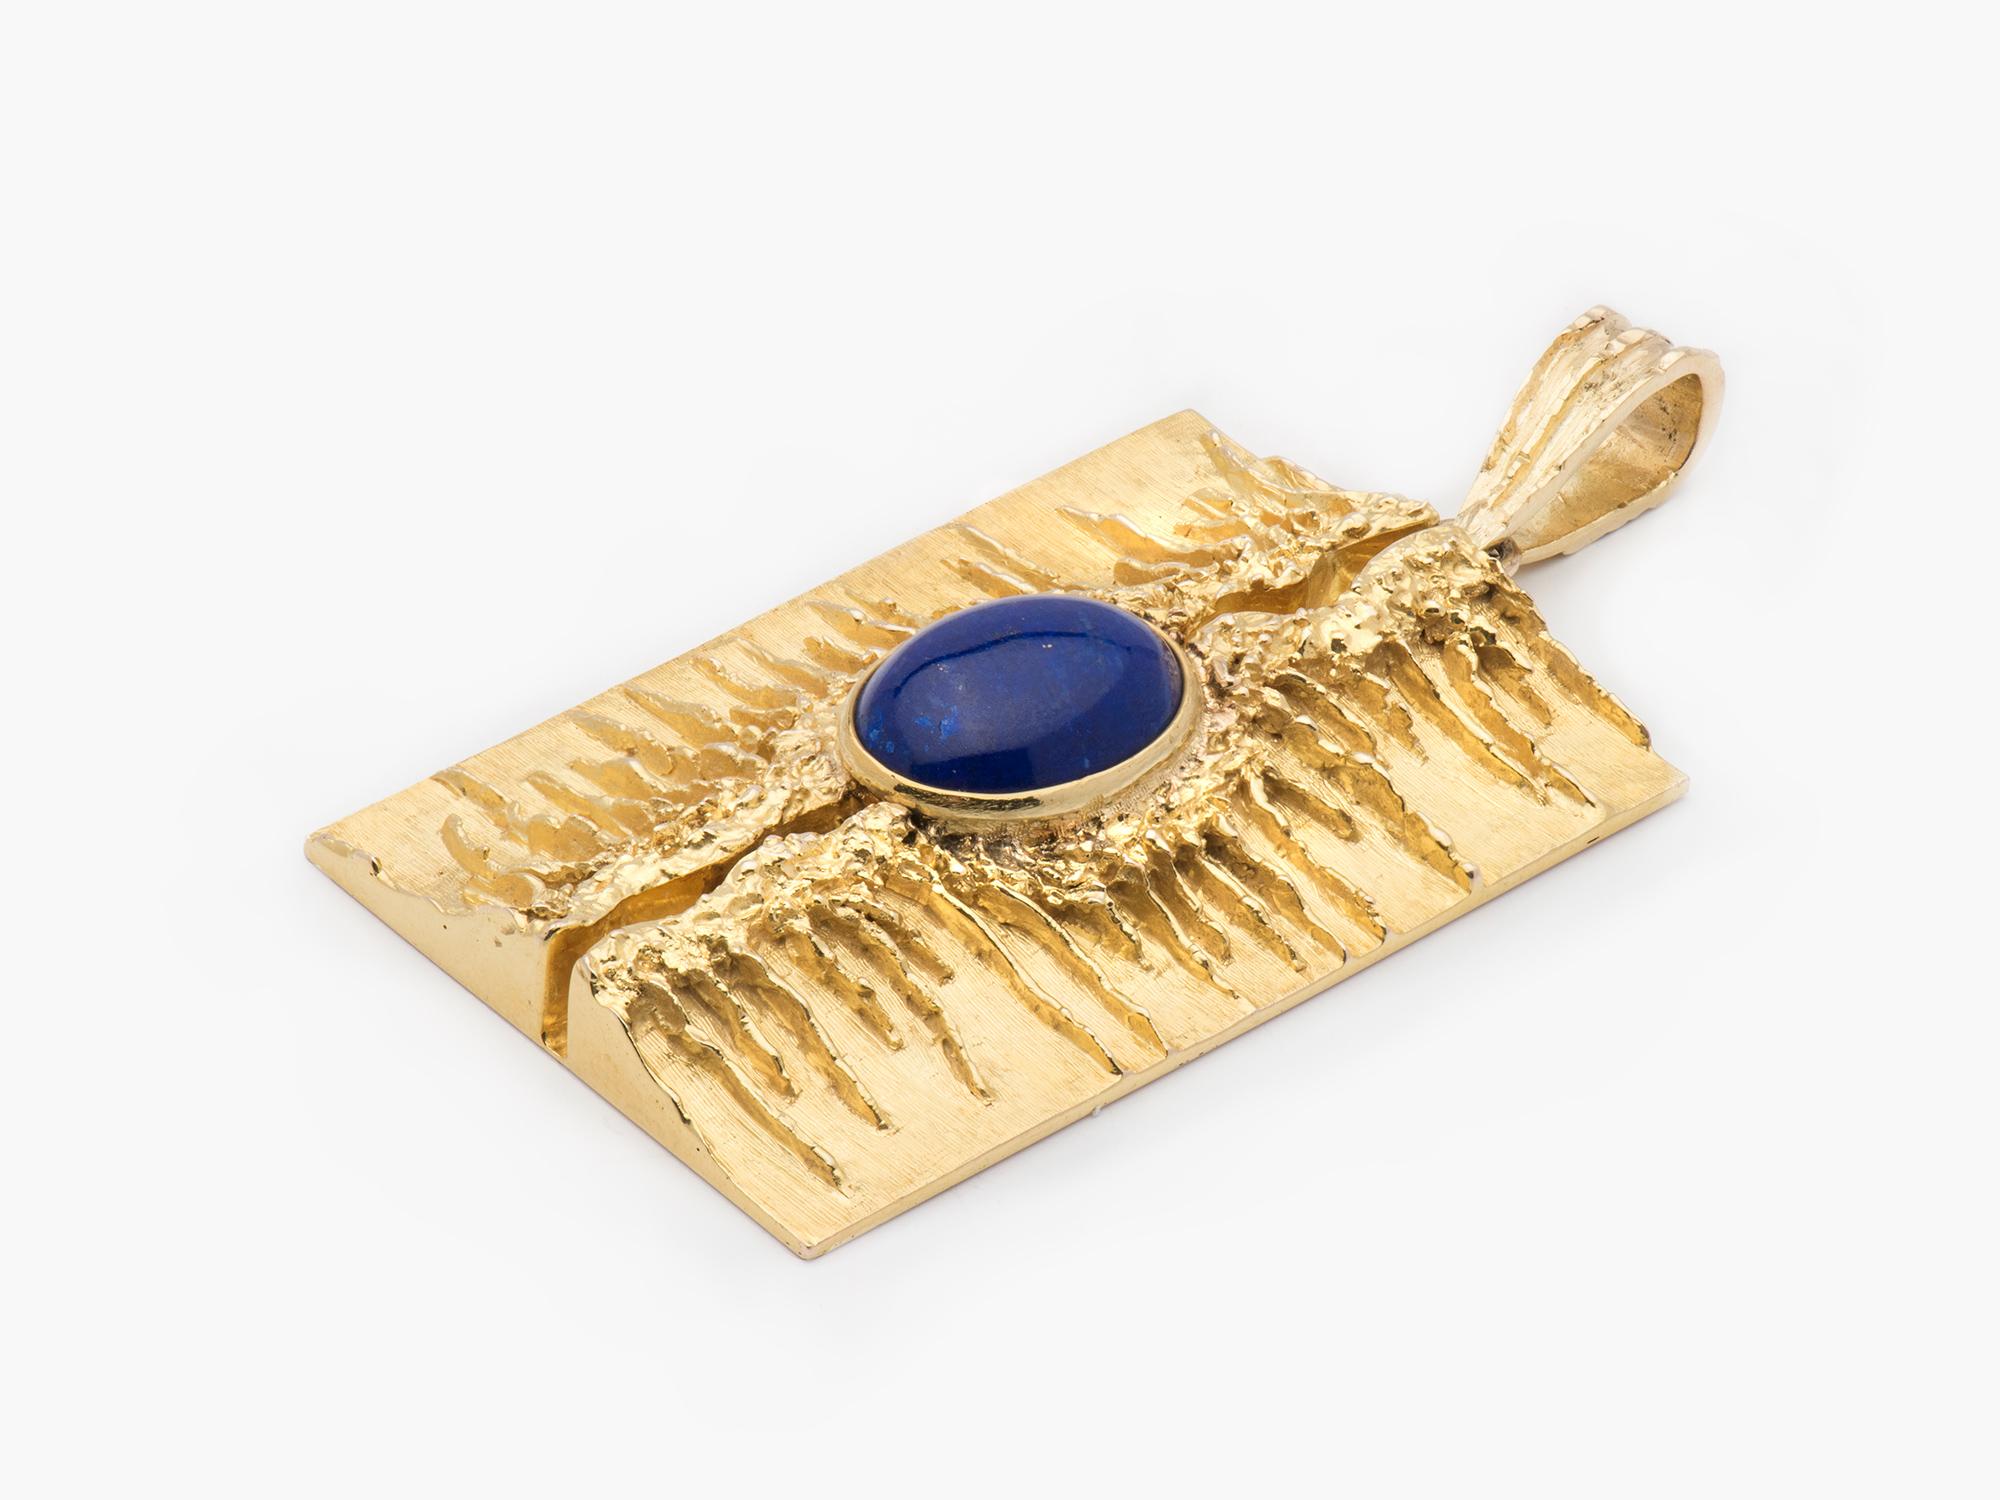 A unique 18k gold modernist pendant set with a lapis cabochon.